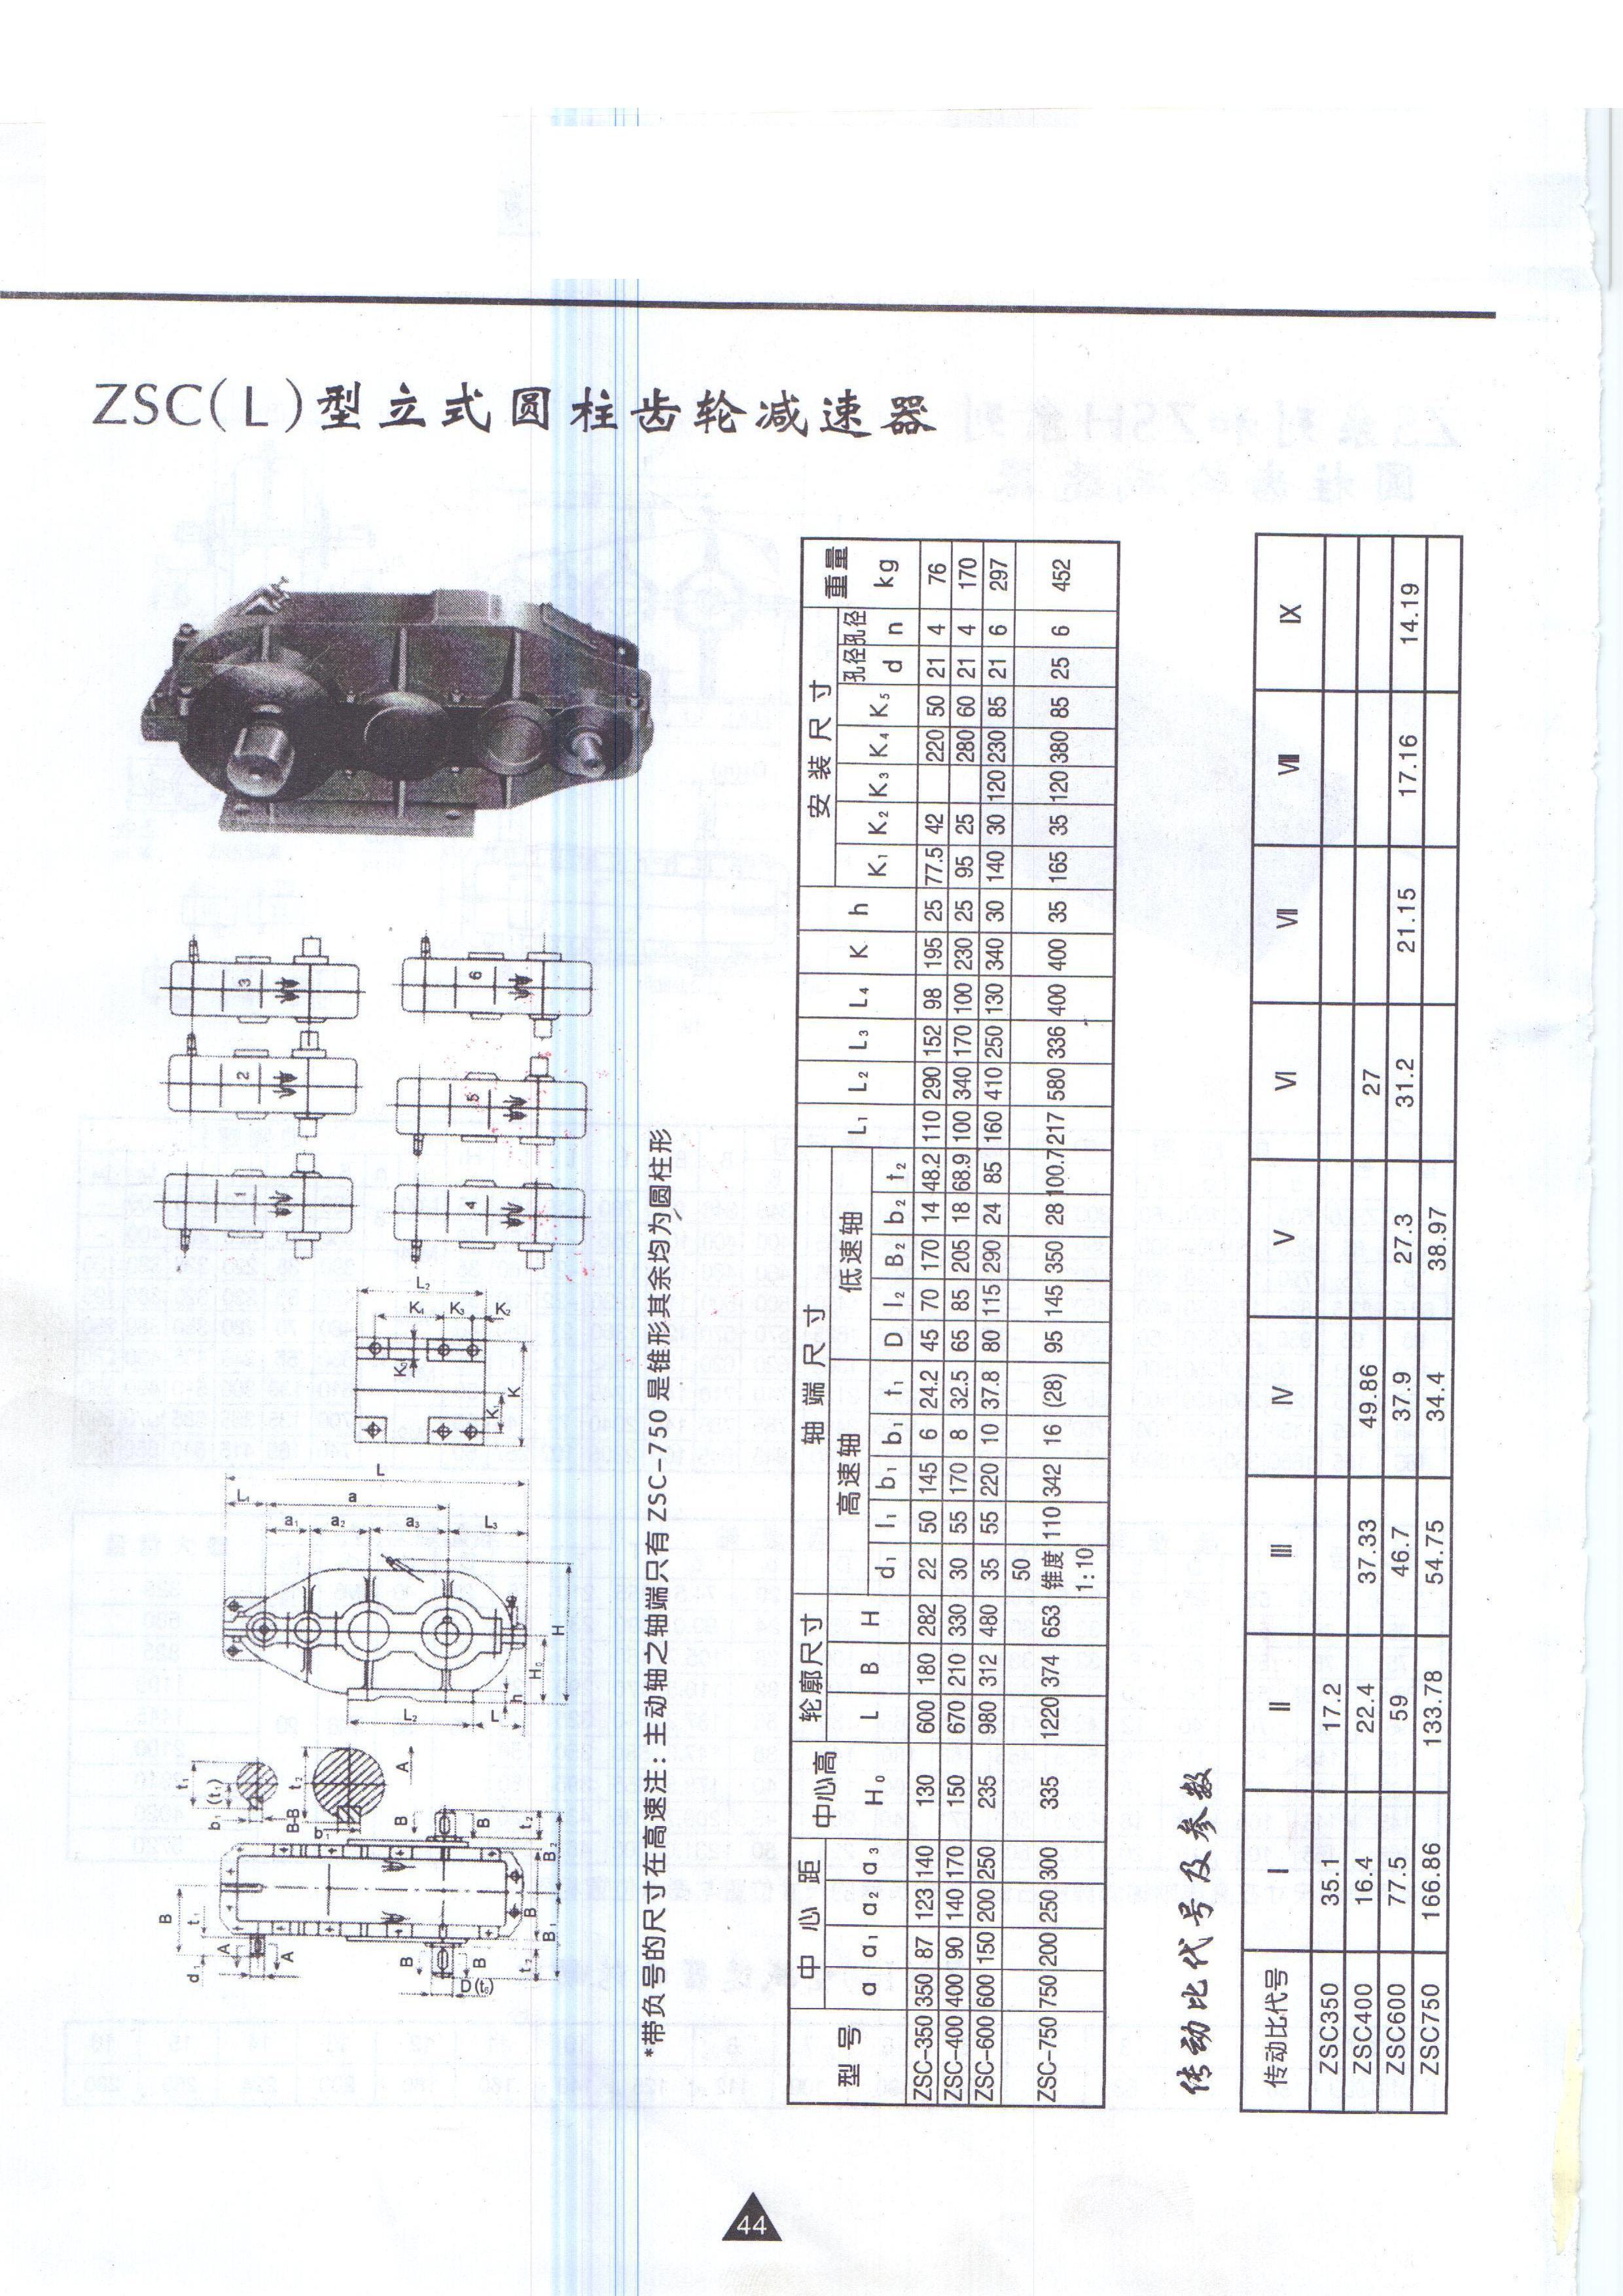 供应减速机ZSC350-17.2-1圆柱齿轮减速机及配件-现货 ZSC350减速机,ZSC400减速机,ZSC600减速机,ZSC750减速机,齿轮减速机